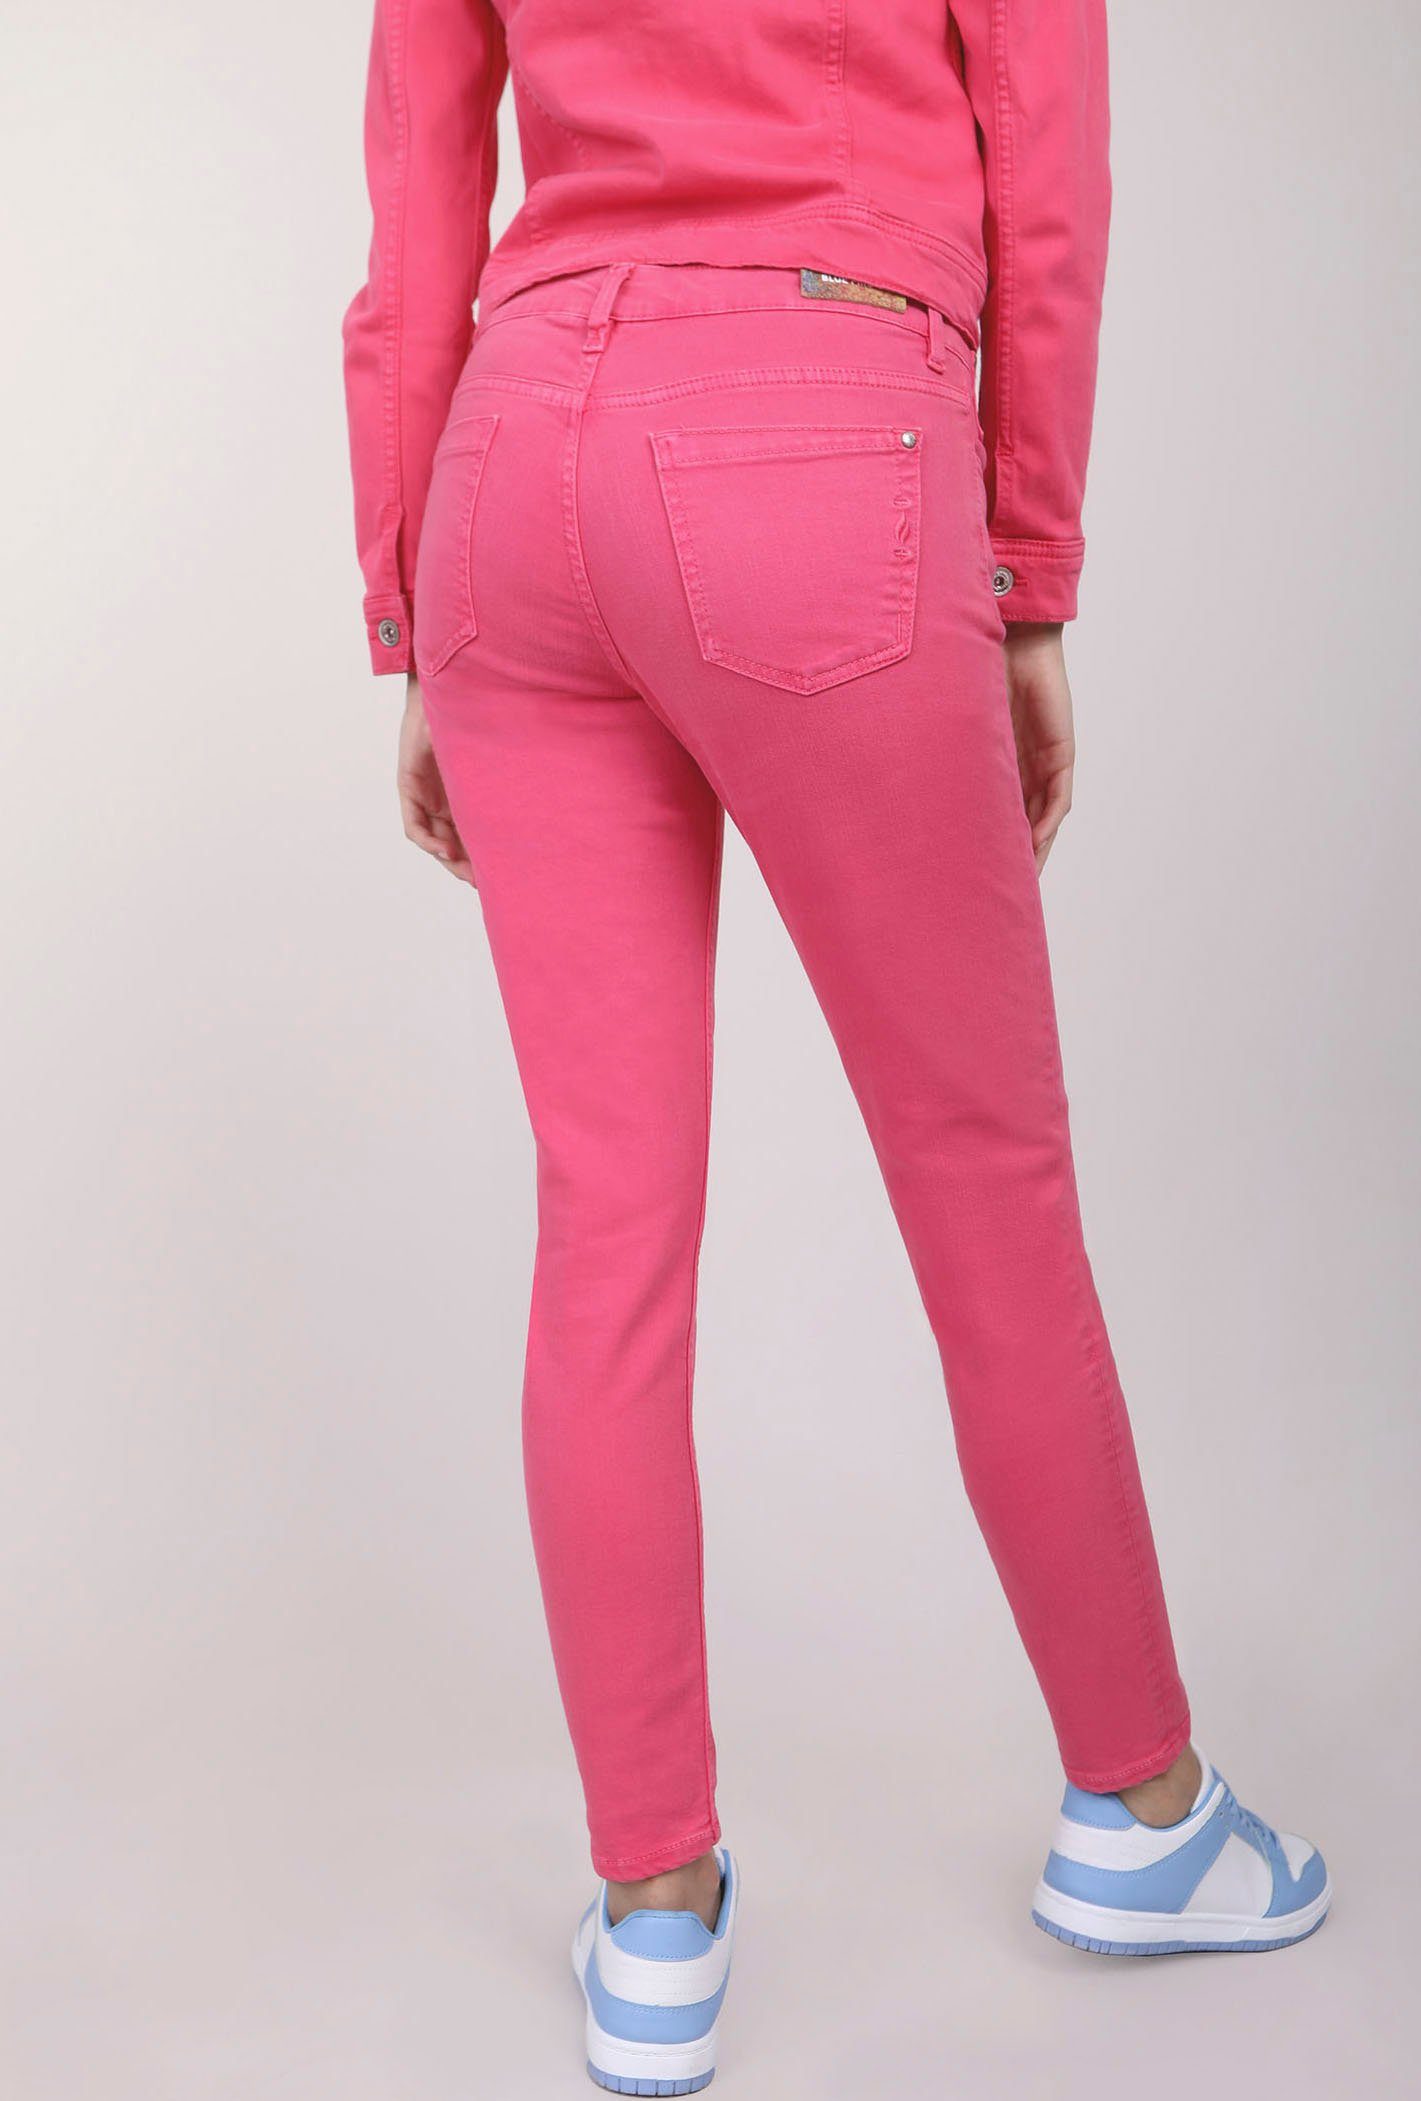 Eingrifftasche BLUE Reißverschluß-Detail FIRE an mit Skinny-fit-Jeans pink der CHLOE